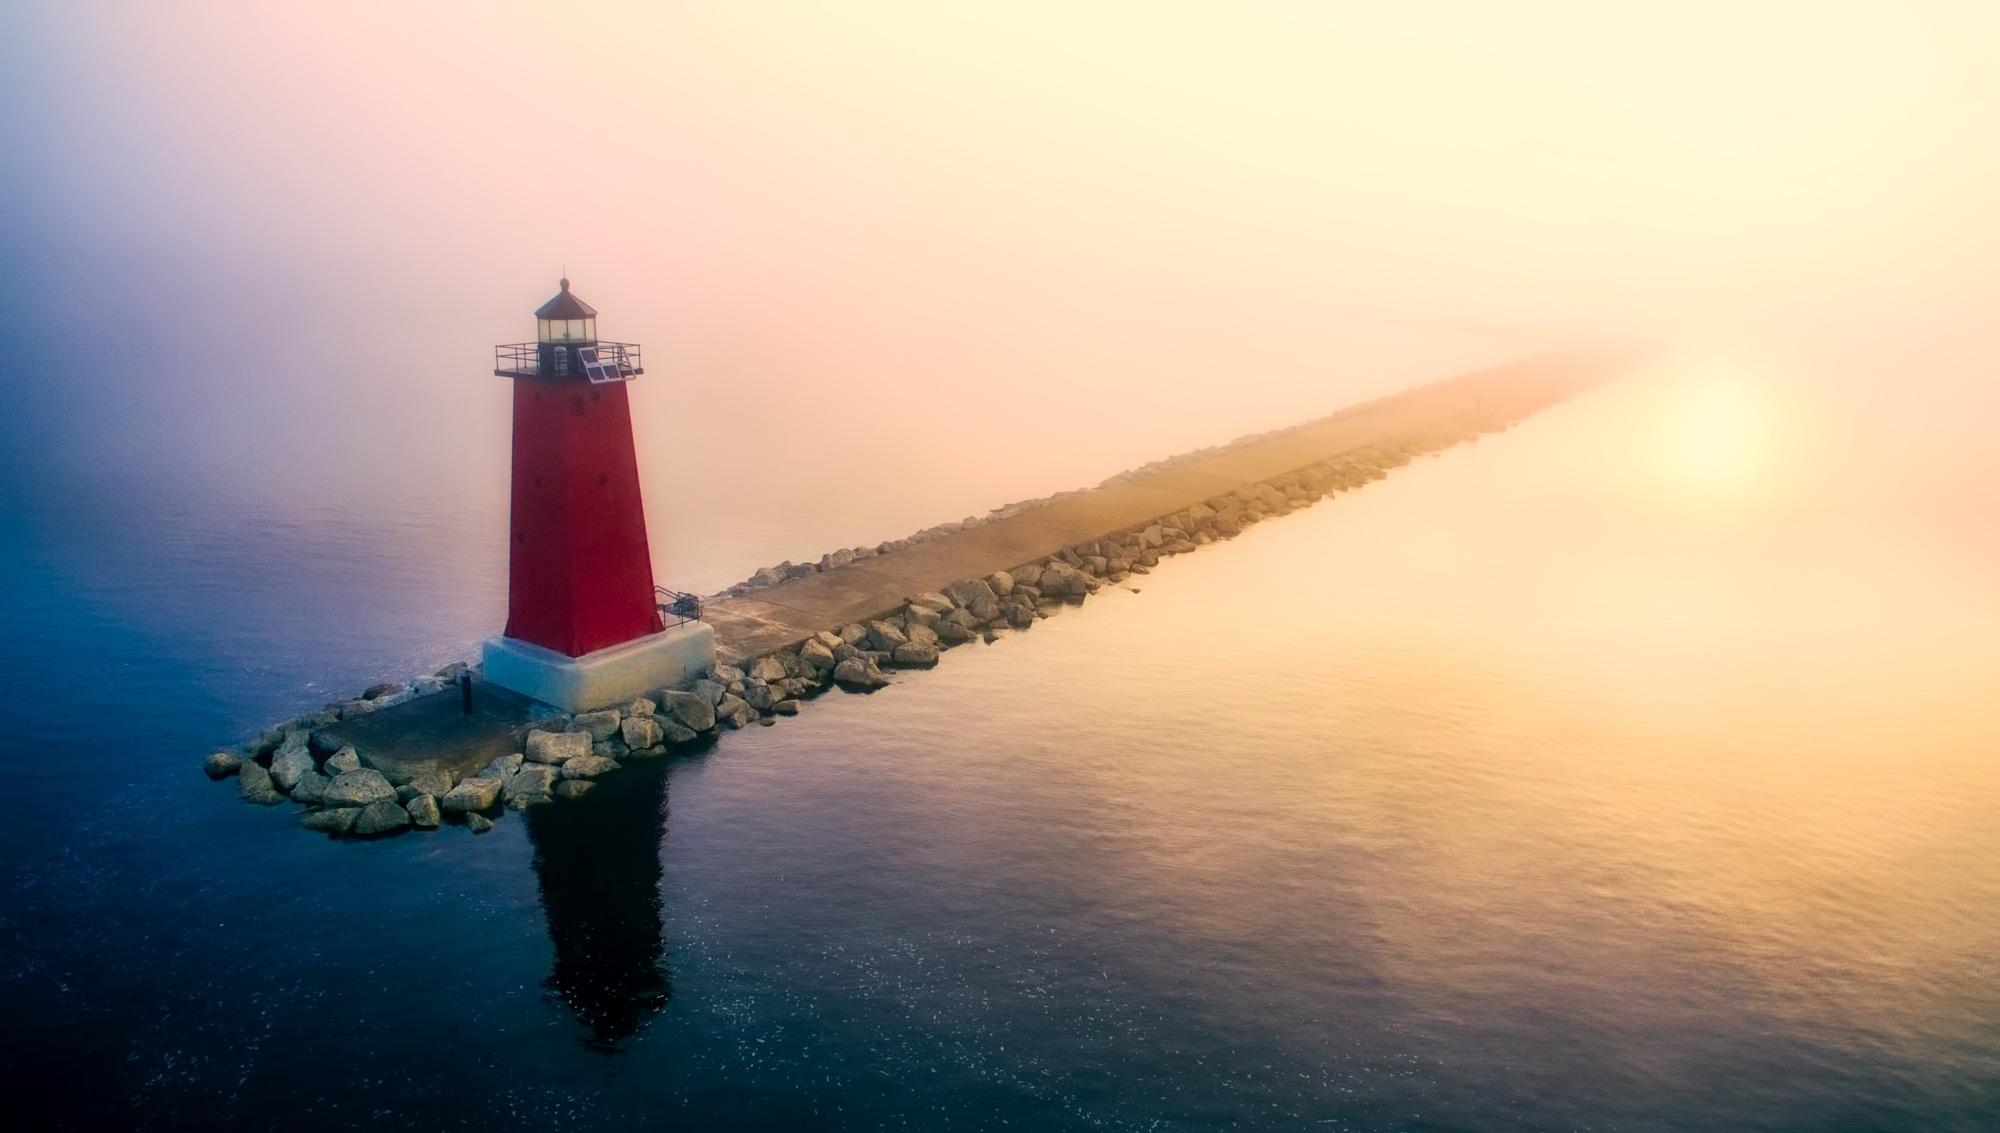 Картинка Фотокартина на холсте - Красный маяк на мысе у моря 3